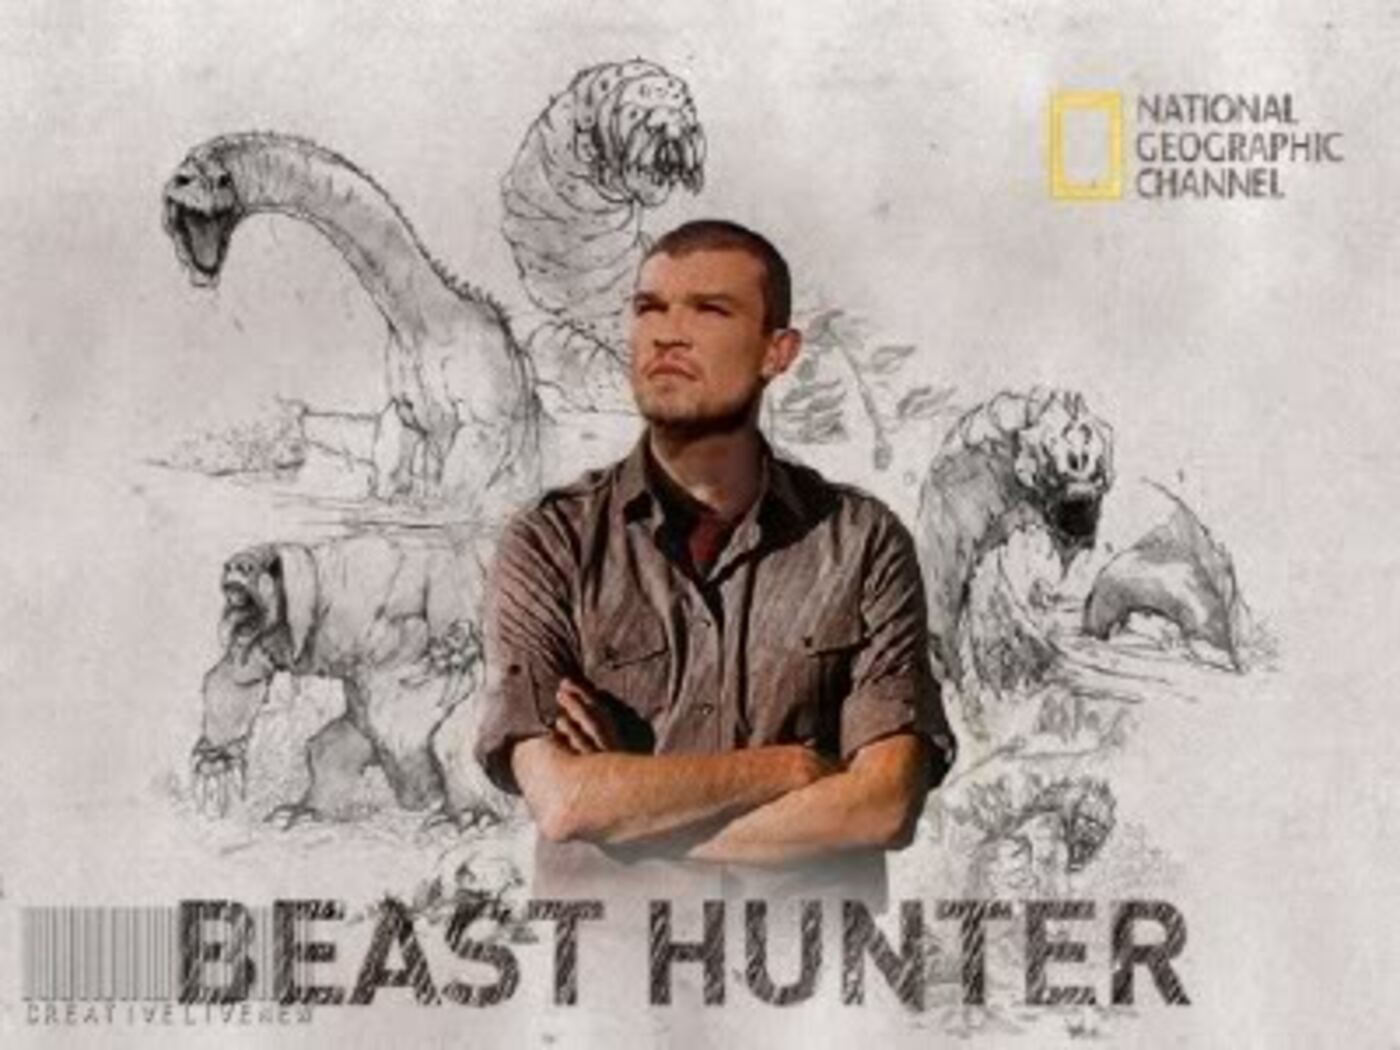 7/21/2013 The Beast Hunter Pat Spain